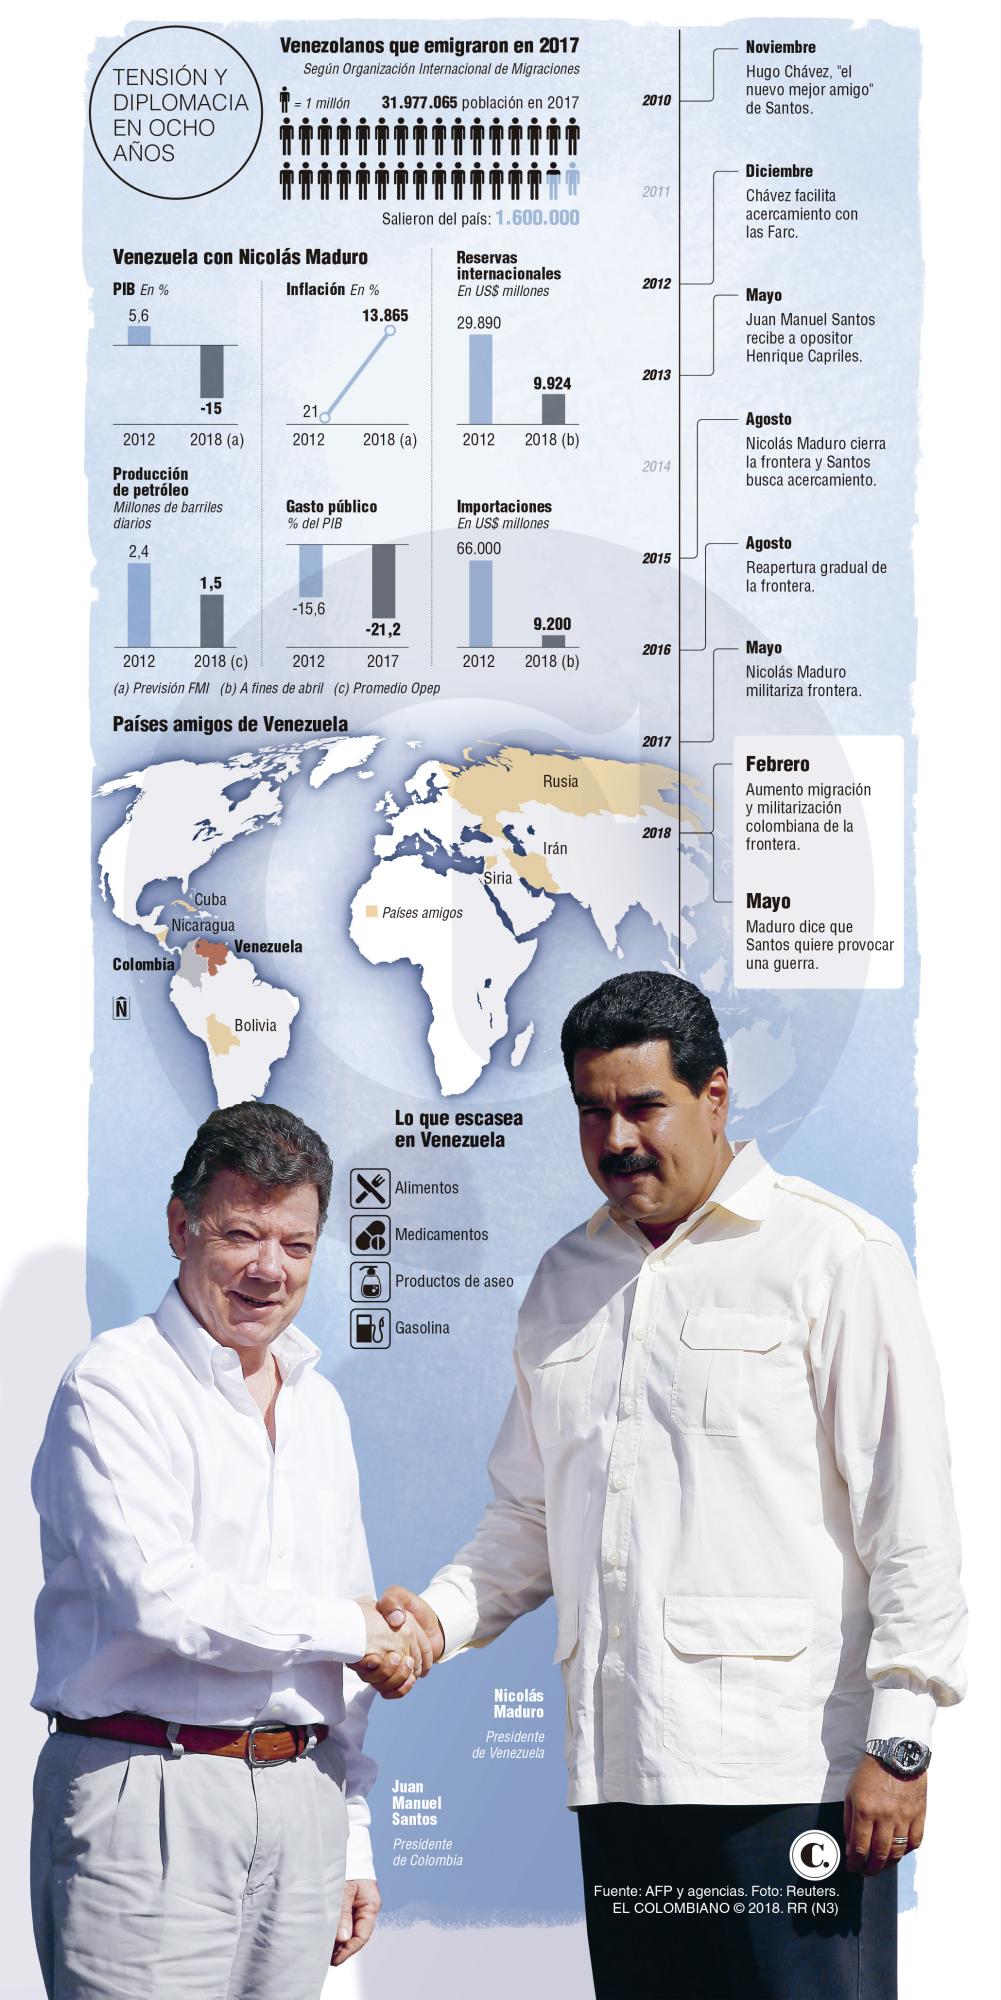 Nicolás Maduro: un vecino complicado 